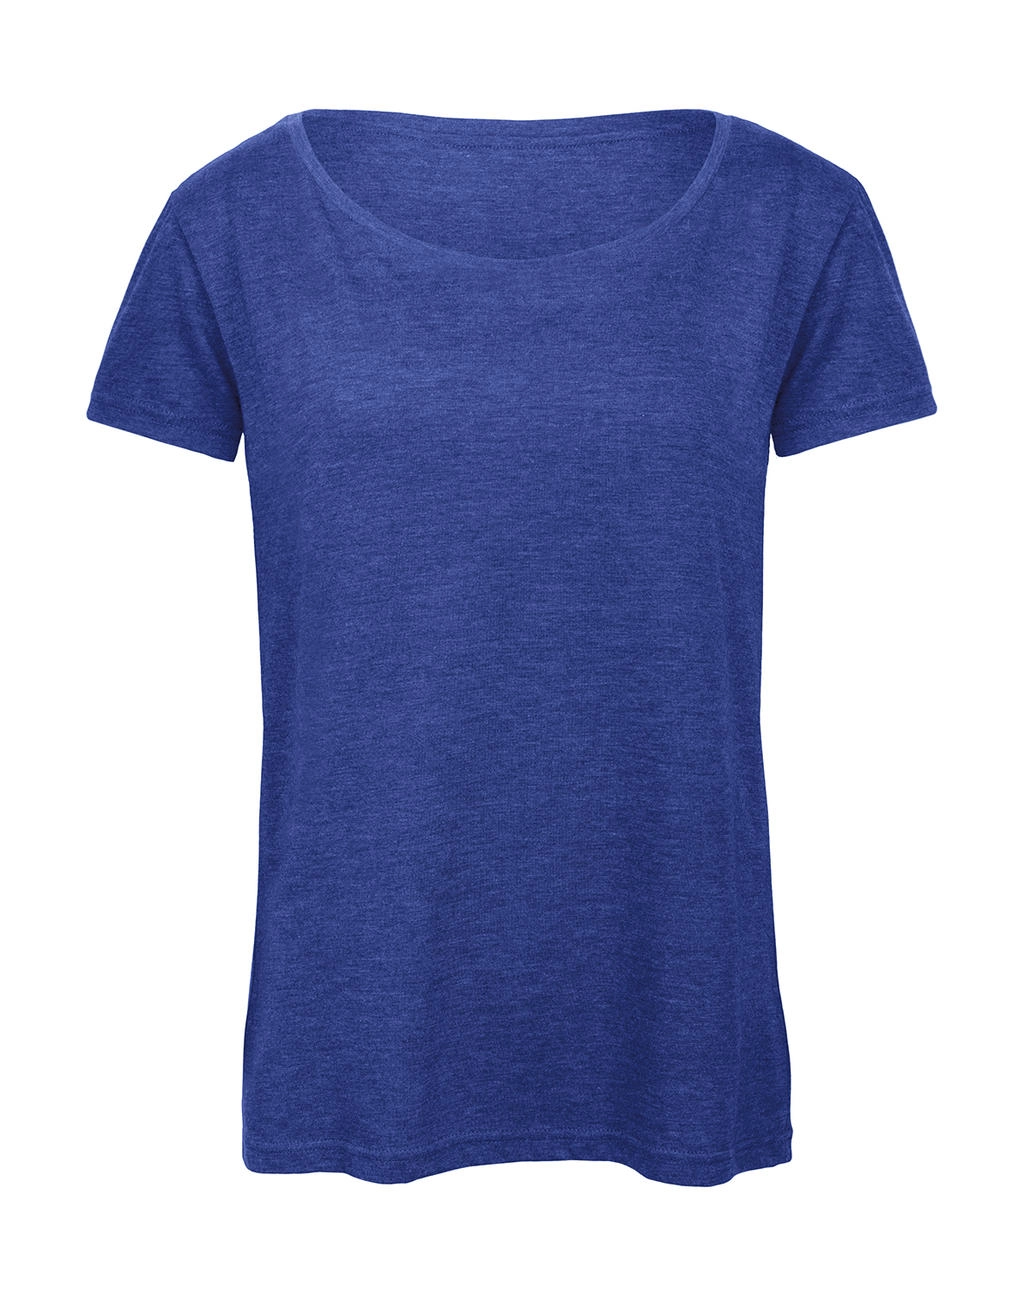 Triblend/women T-Shirt zum Besticken und Bedrucken in der Farbe Heather Royal Blue mit Ihren Logo, Schriftzug oder Motiv.